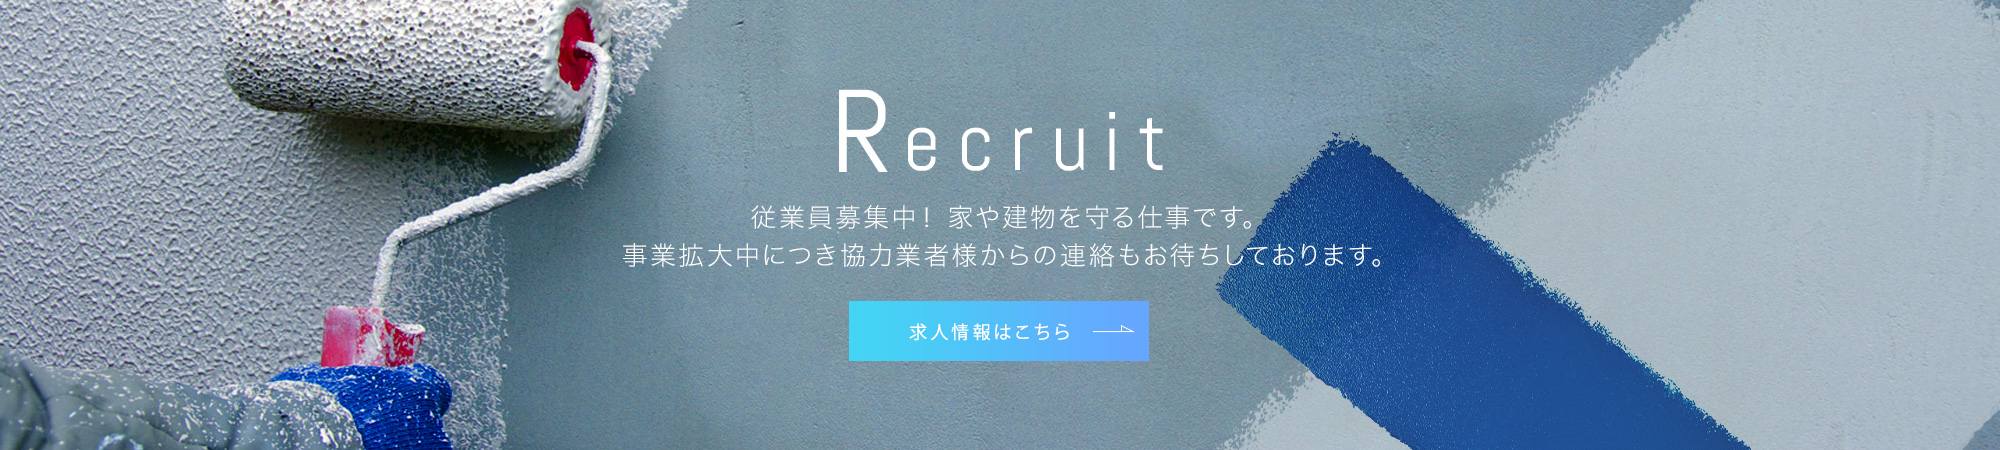 banner_recruit_full